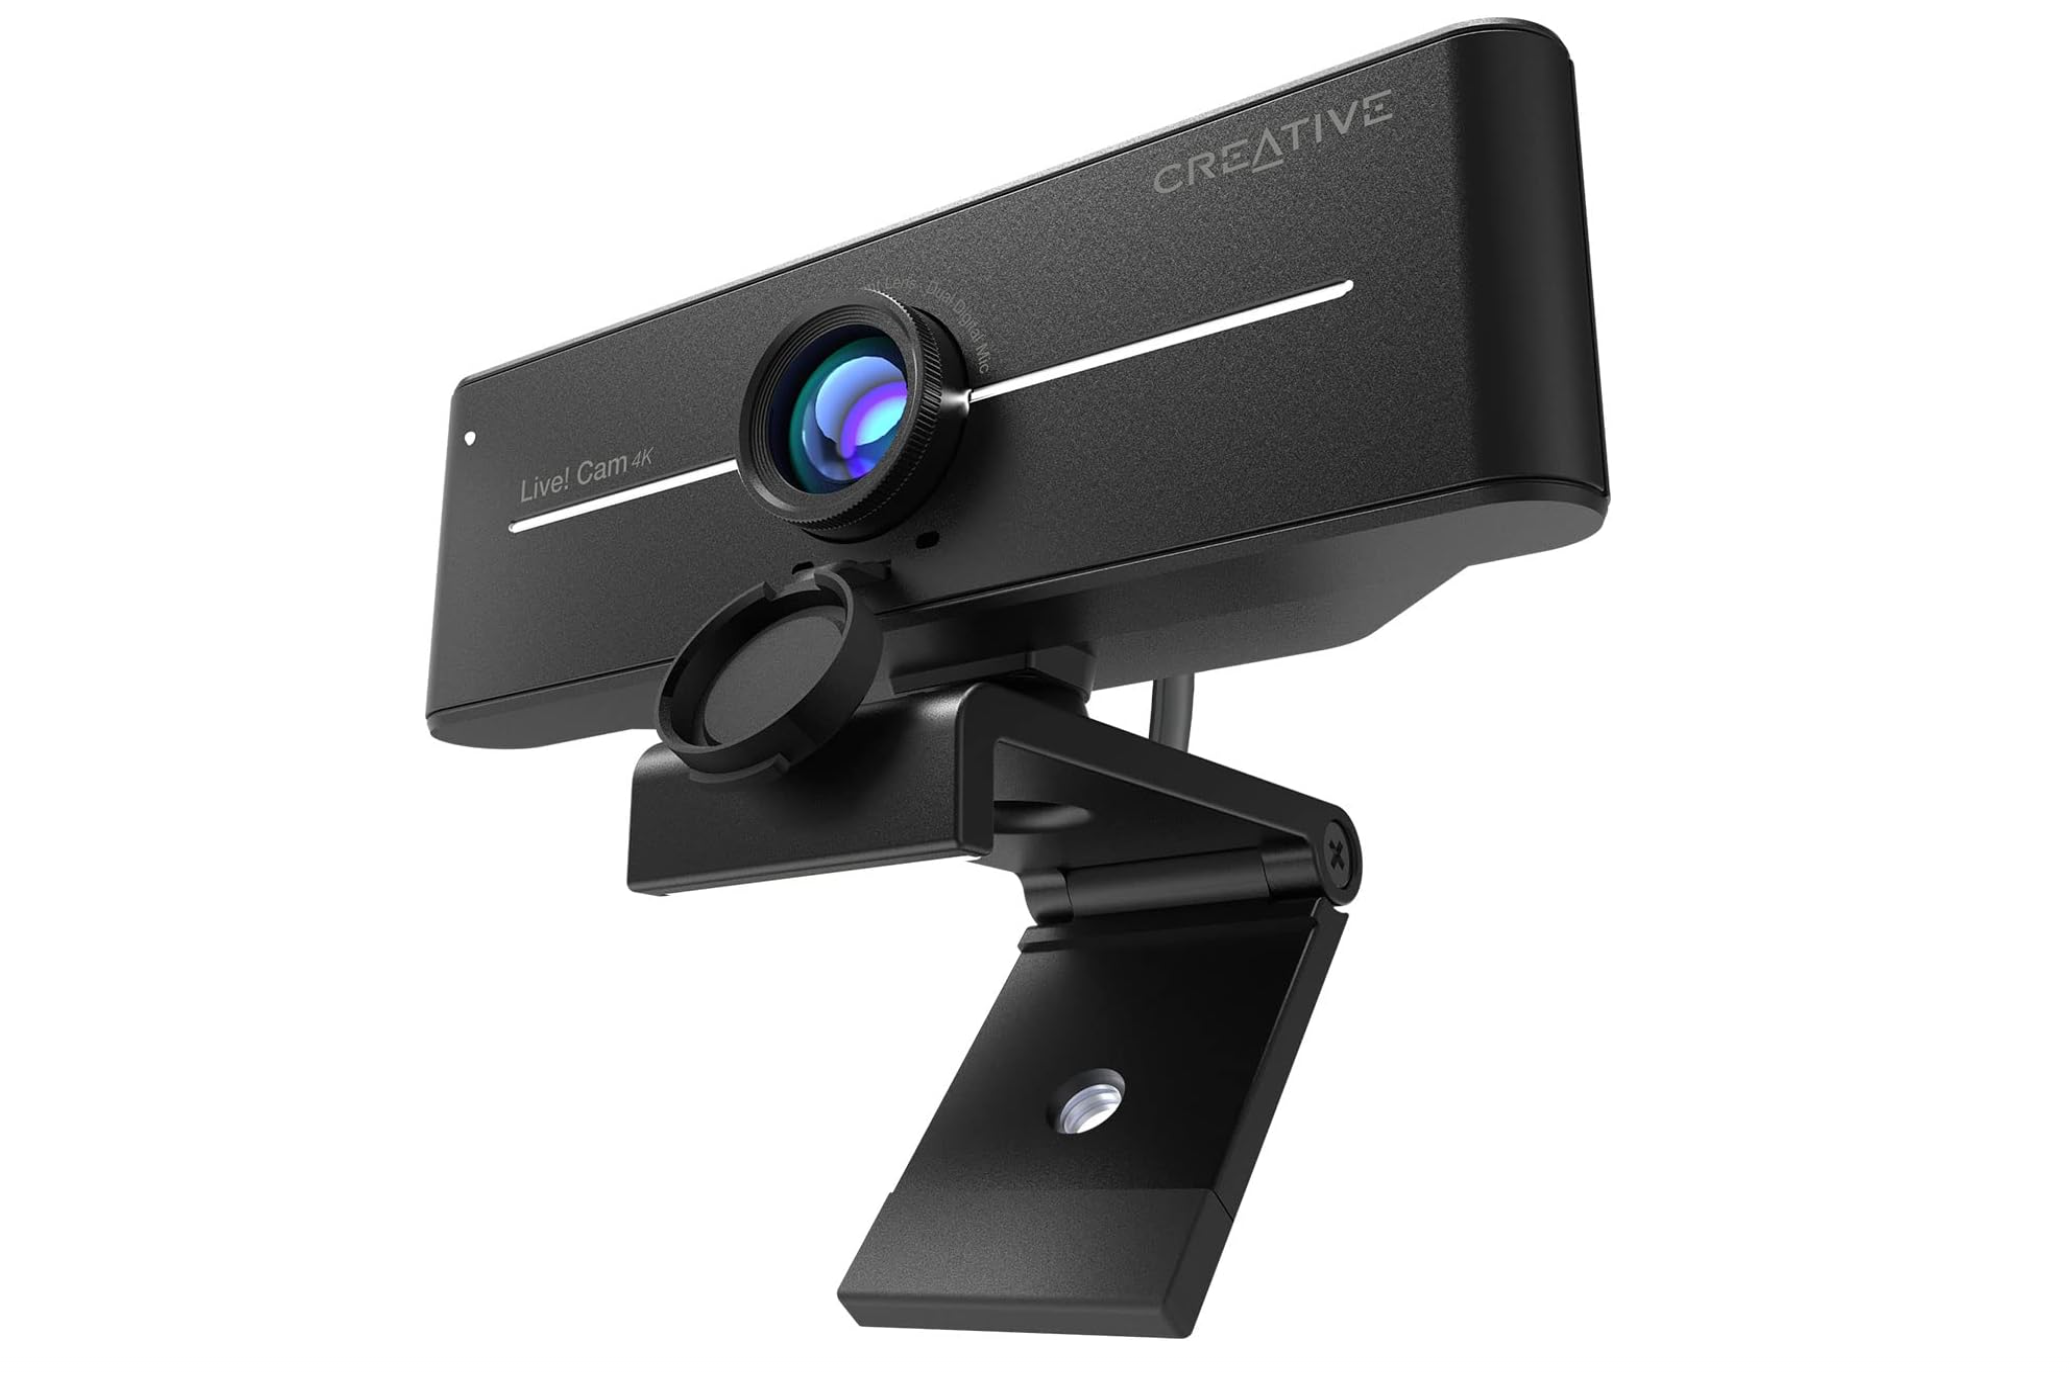 Sáng tạo trực tiếp! Cam Sync 4k - Webcam giá rẻ tốt nhất